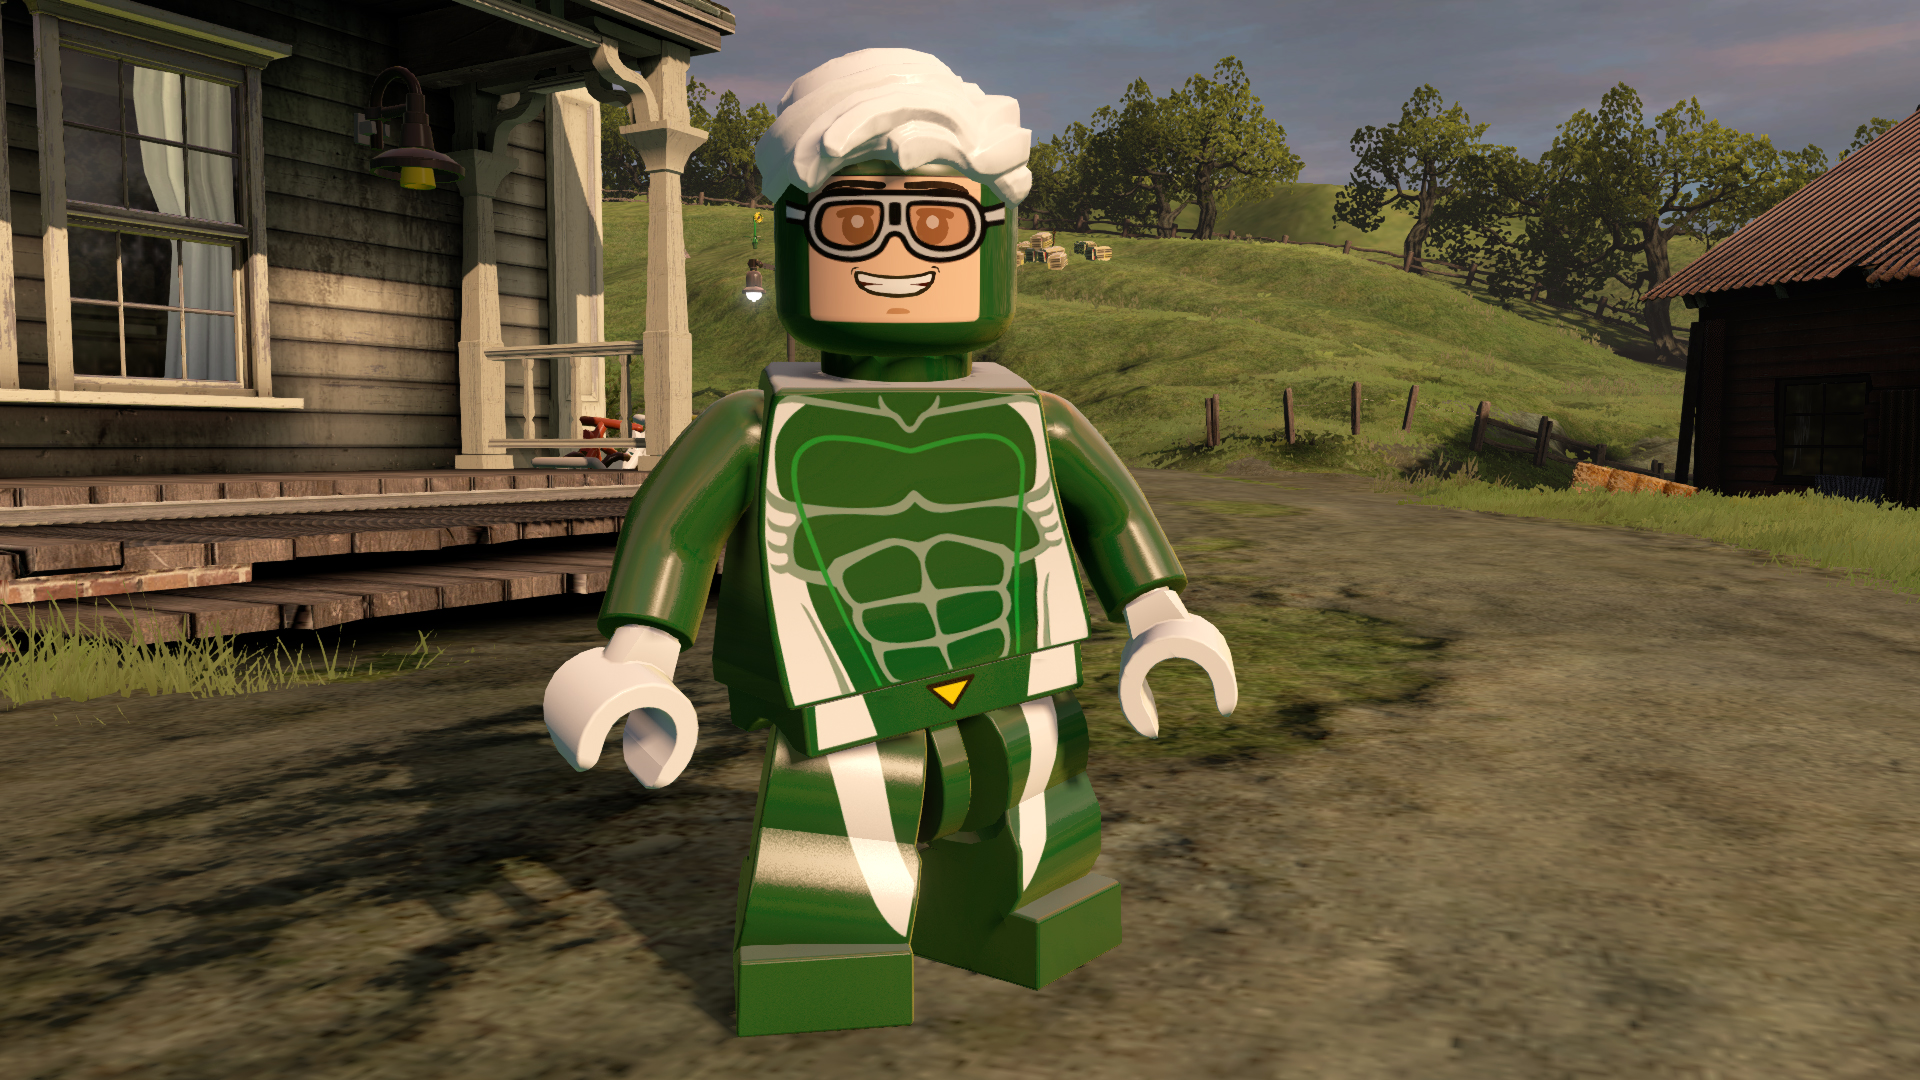 LEGO® MARVEL's Avengers DLC - Marvel's Captain America: Civil War Character  Pack on Steam